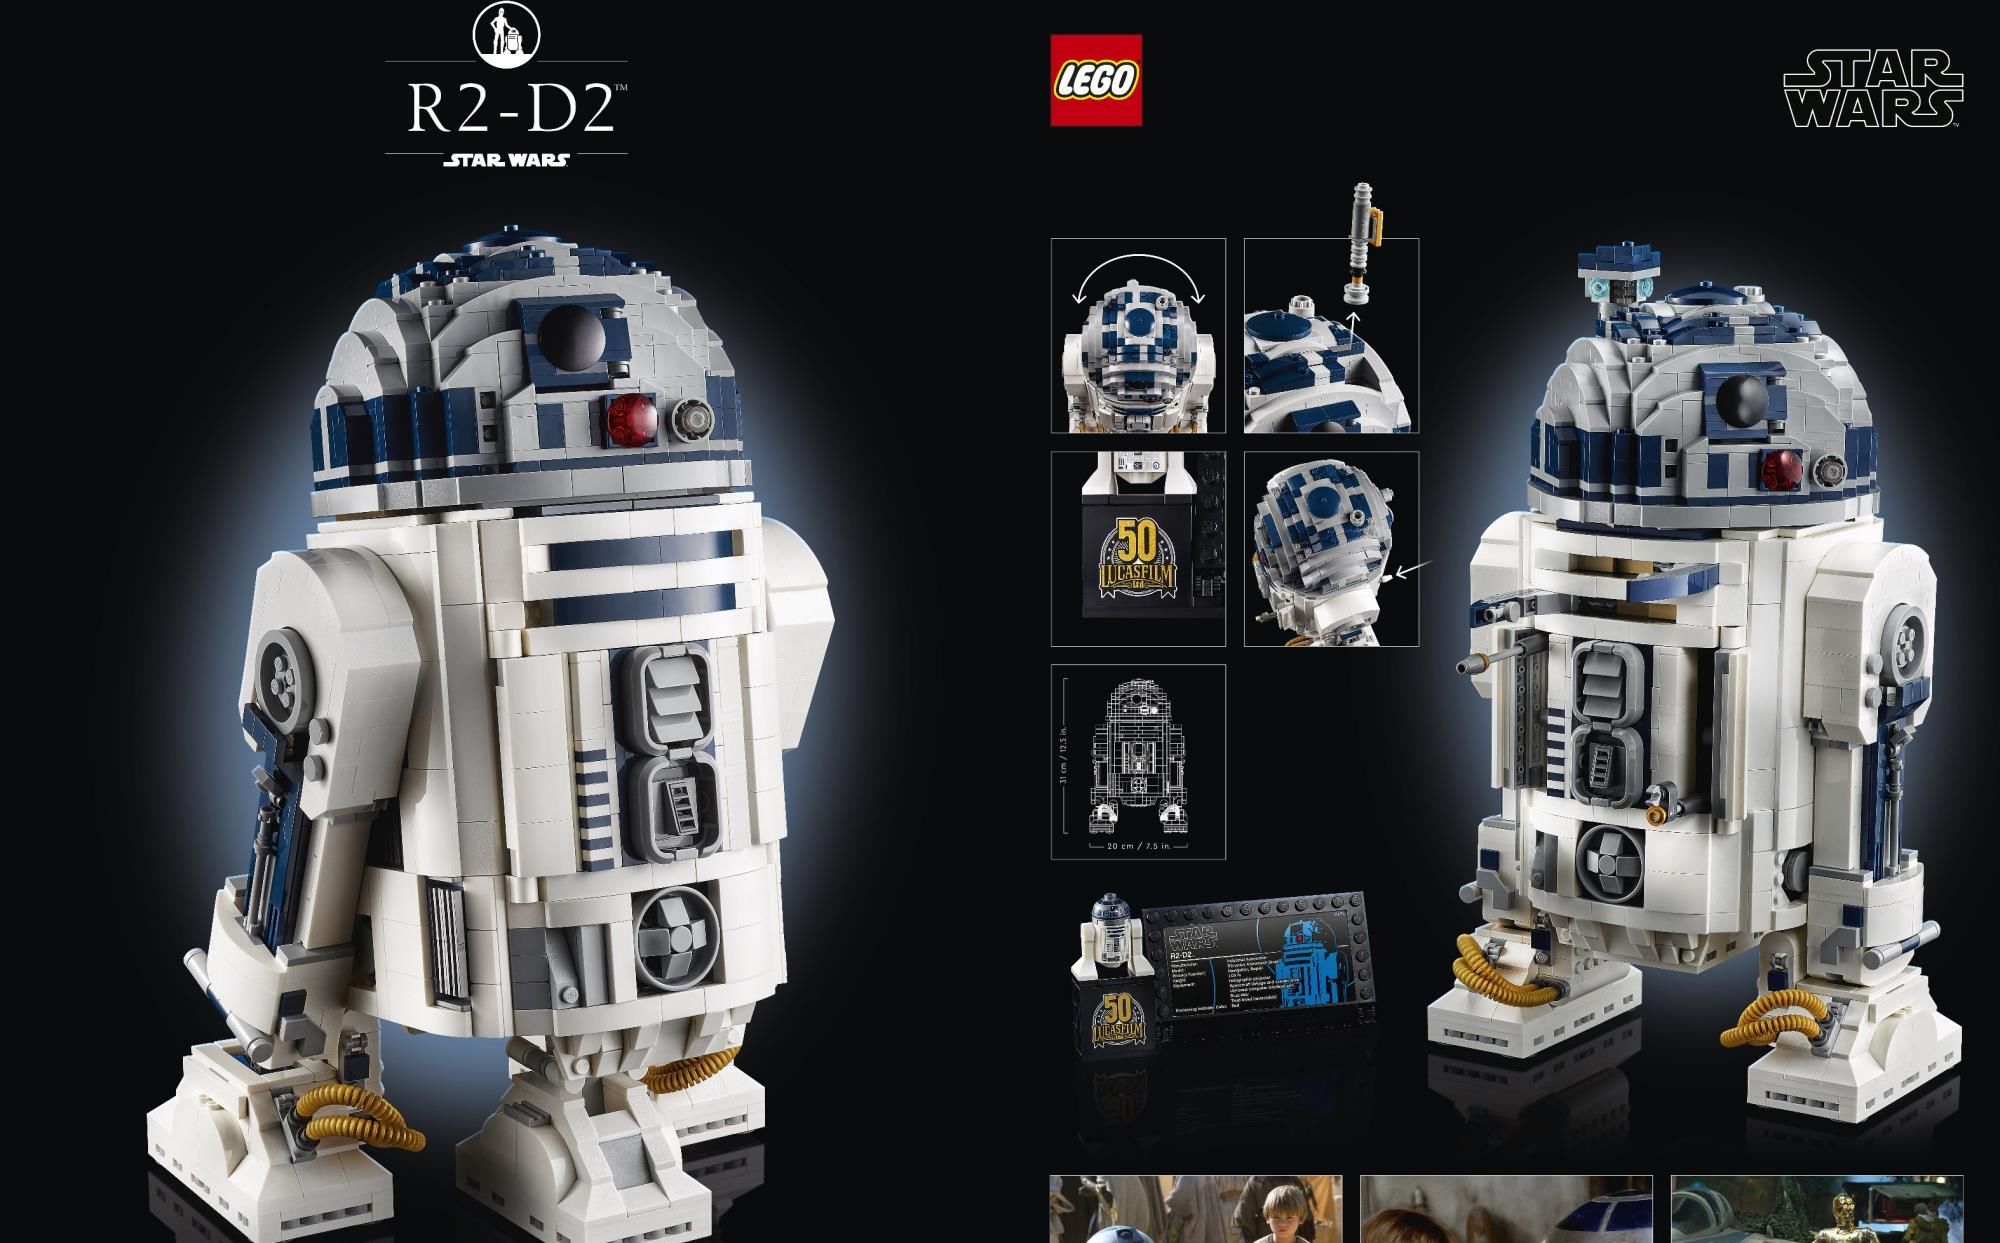 樂高發布紀念套裝 R2 D2 慶祝星戰製作公司成立50周年 中國熱點